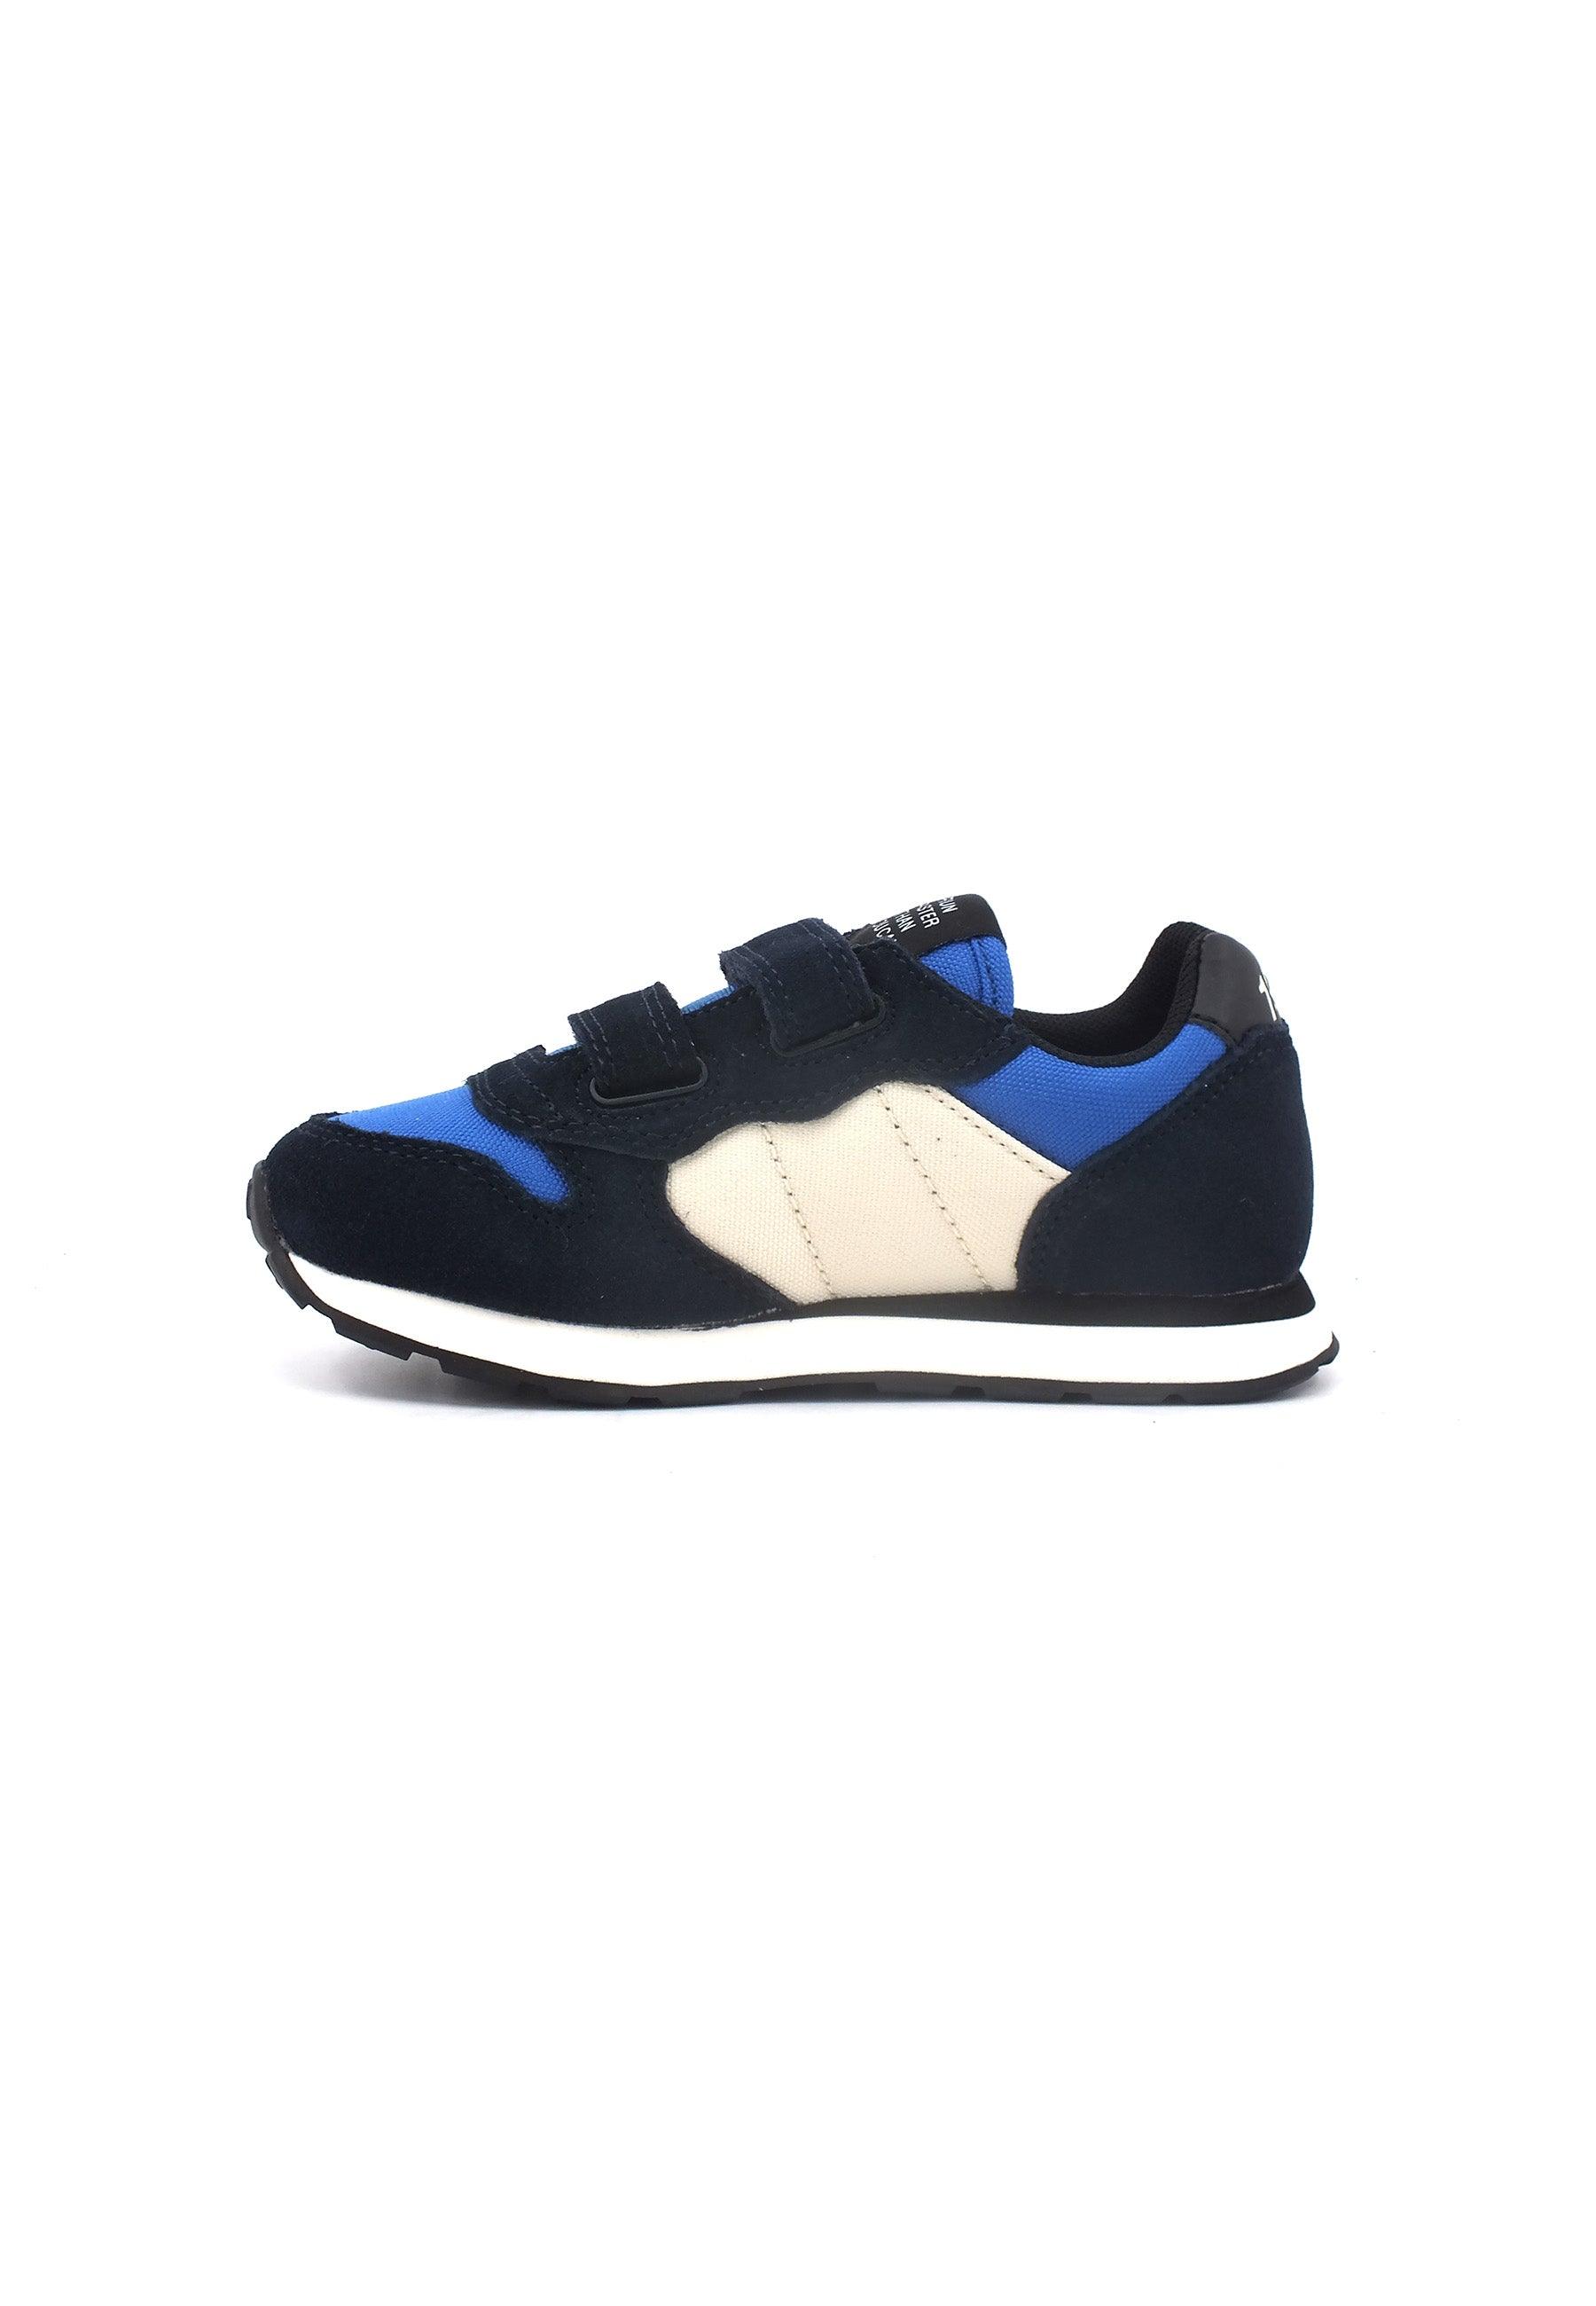 SUN68 Boy's Tom Color Sneaker Bimbo Navy Blue Z43307B - Sandrini Calzature e Abbigliamento